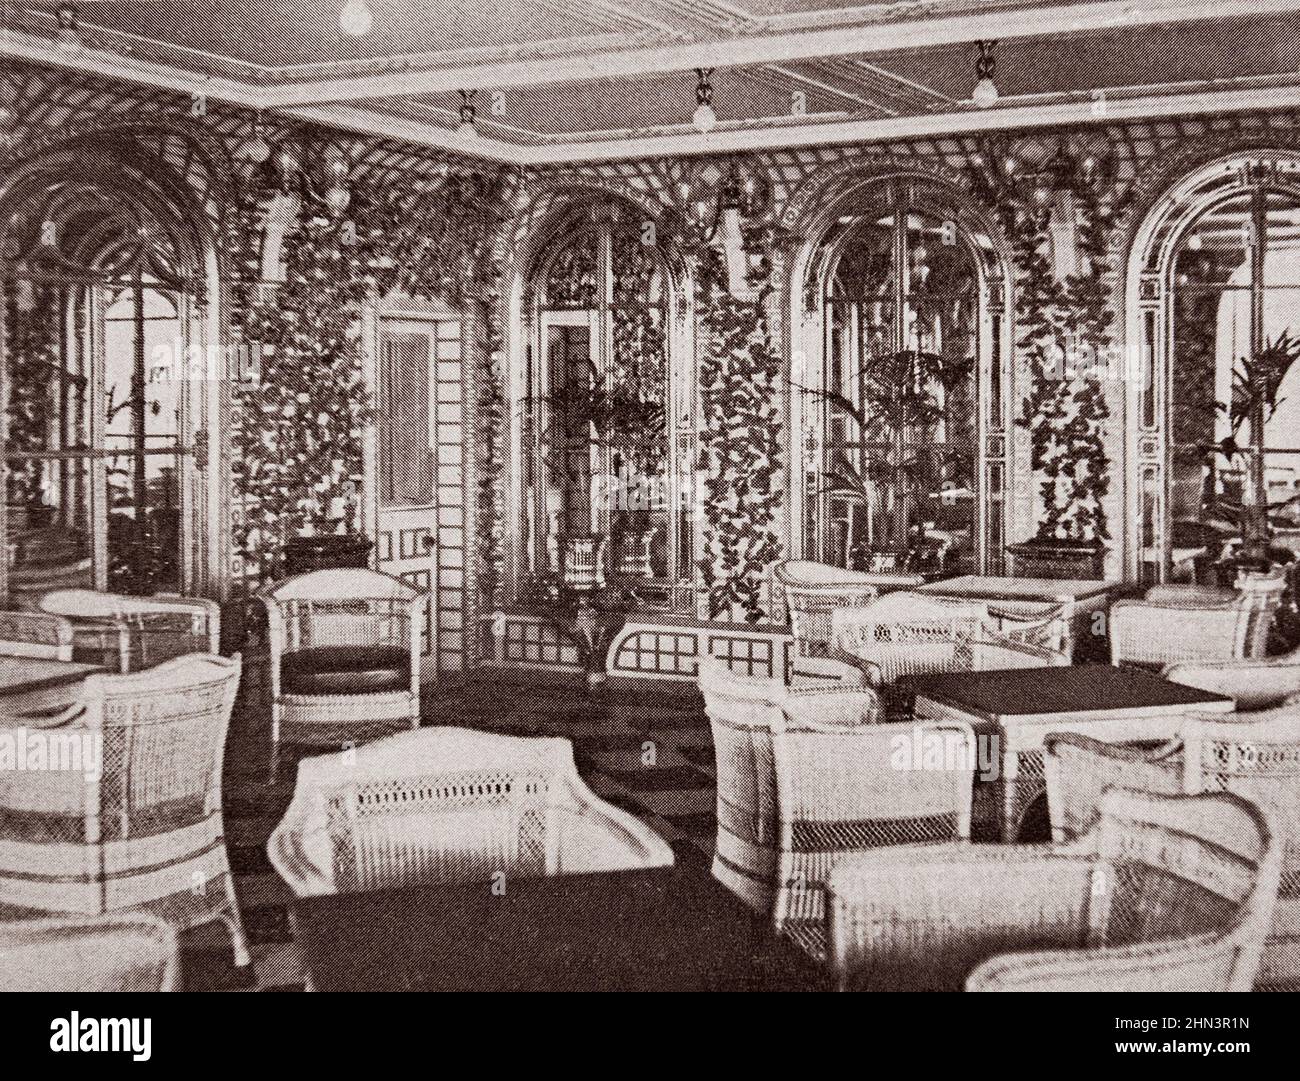 Luxe et confort à bord de l'intérieur du paquebot « Titanic » : le café Verandah pour 5 heures. 1912 Banque D'Images